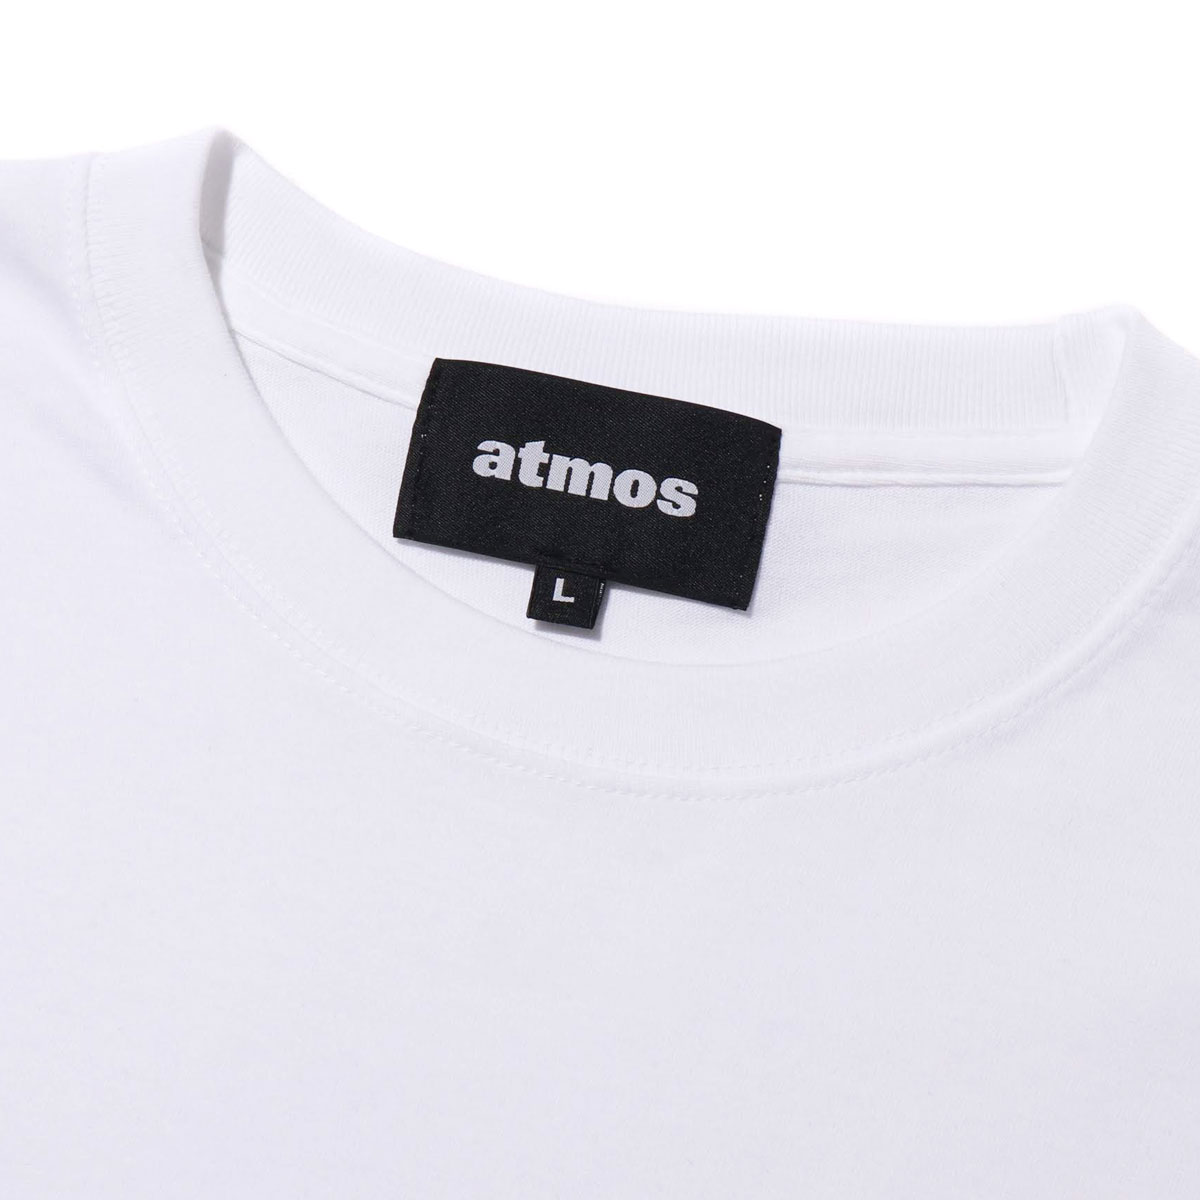 atmos x FC TOKYO LOGO TEE(WHITE)(アトモス エフシートウキョウ ロゴティー)【メンズ】【レディース】【半袖Tシャツ】【20SP-S】